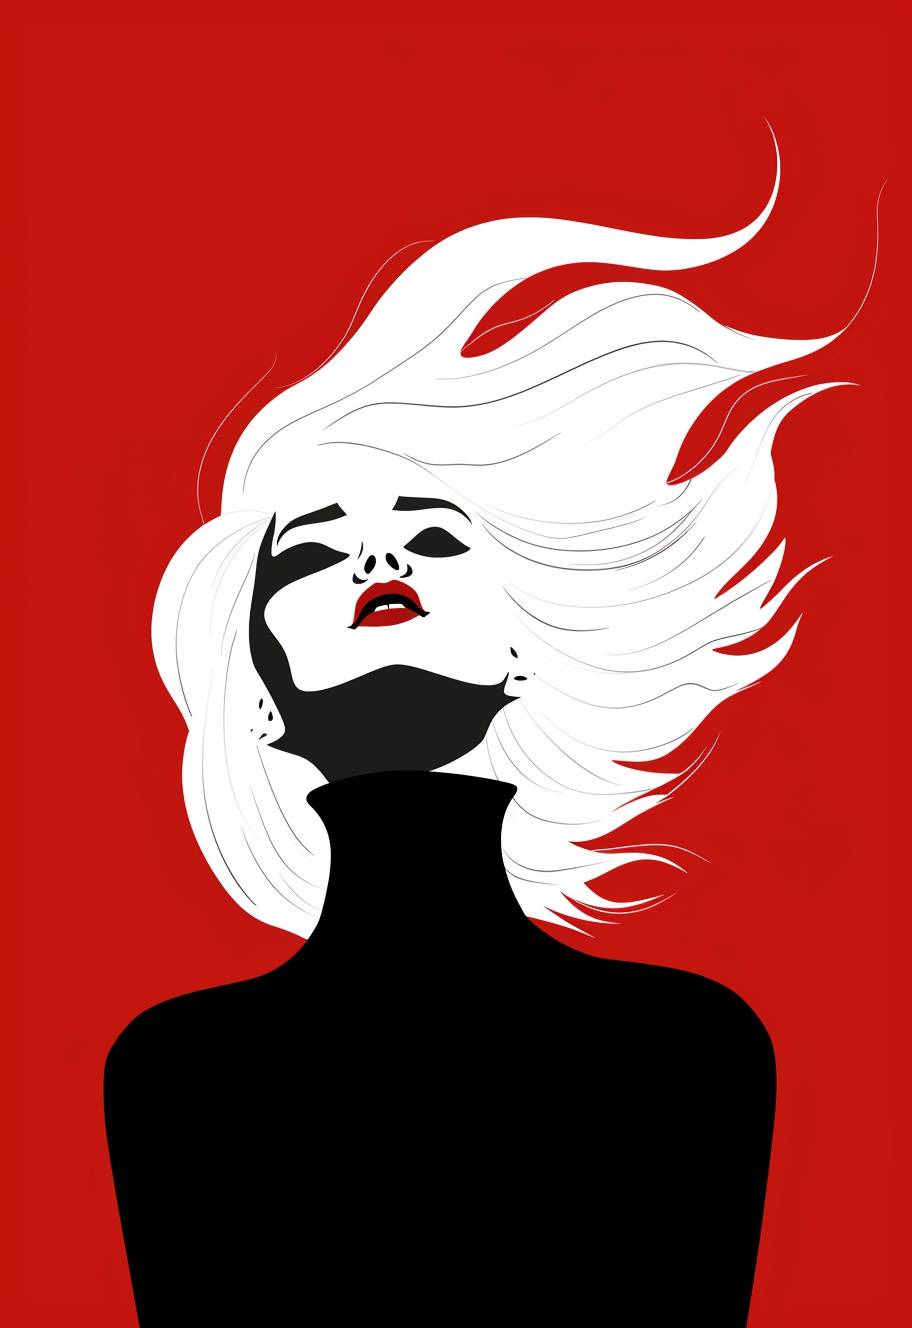 白い髪の女性を描いたミニマリストのレトロイラスト、白黒のカラーパレット、赤い背景に対するダークなコントラスト、シンプルな形状の超現実主義的なスタイル。